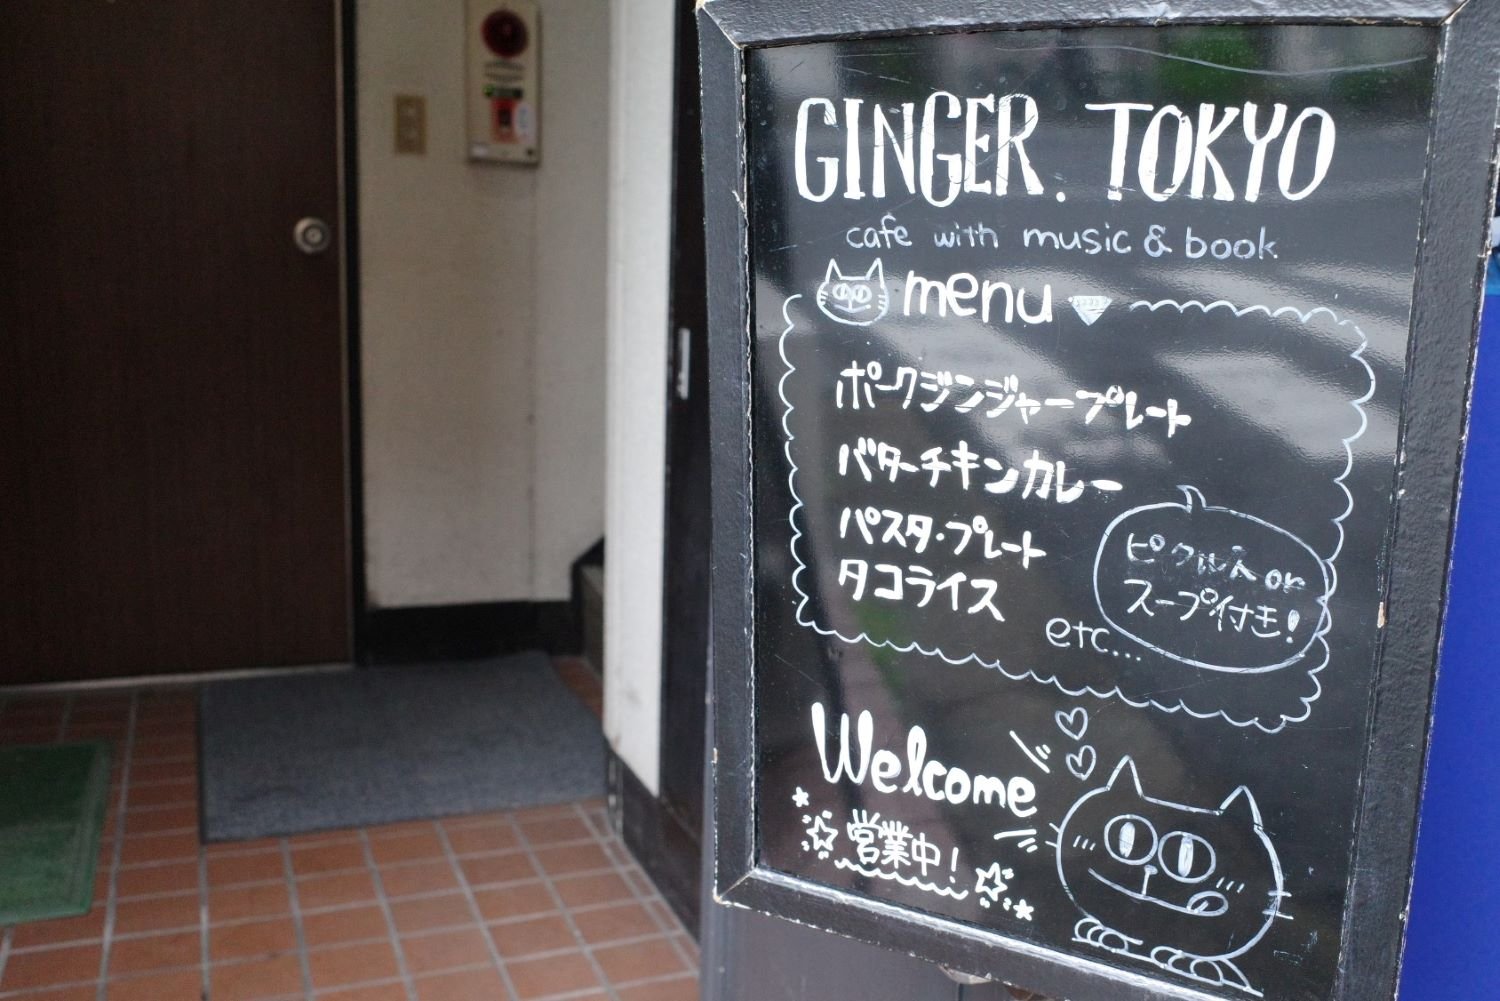 その拠点として2015年に『Cafe GINGER.TOKYO』がはじまった。カフェ自体は人に任せるつもりだったとか。